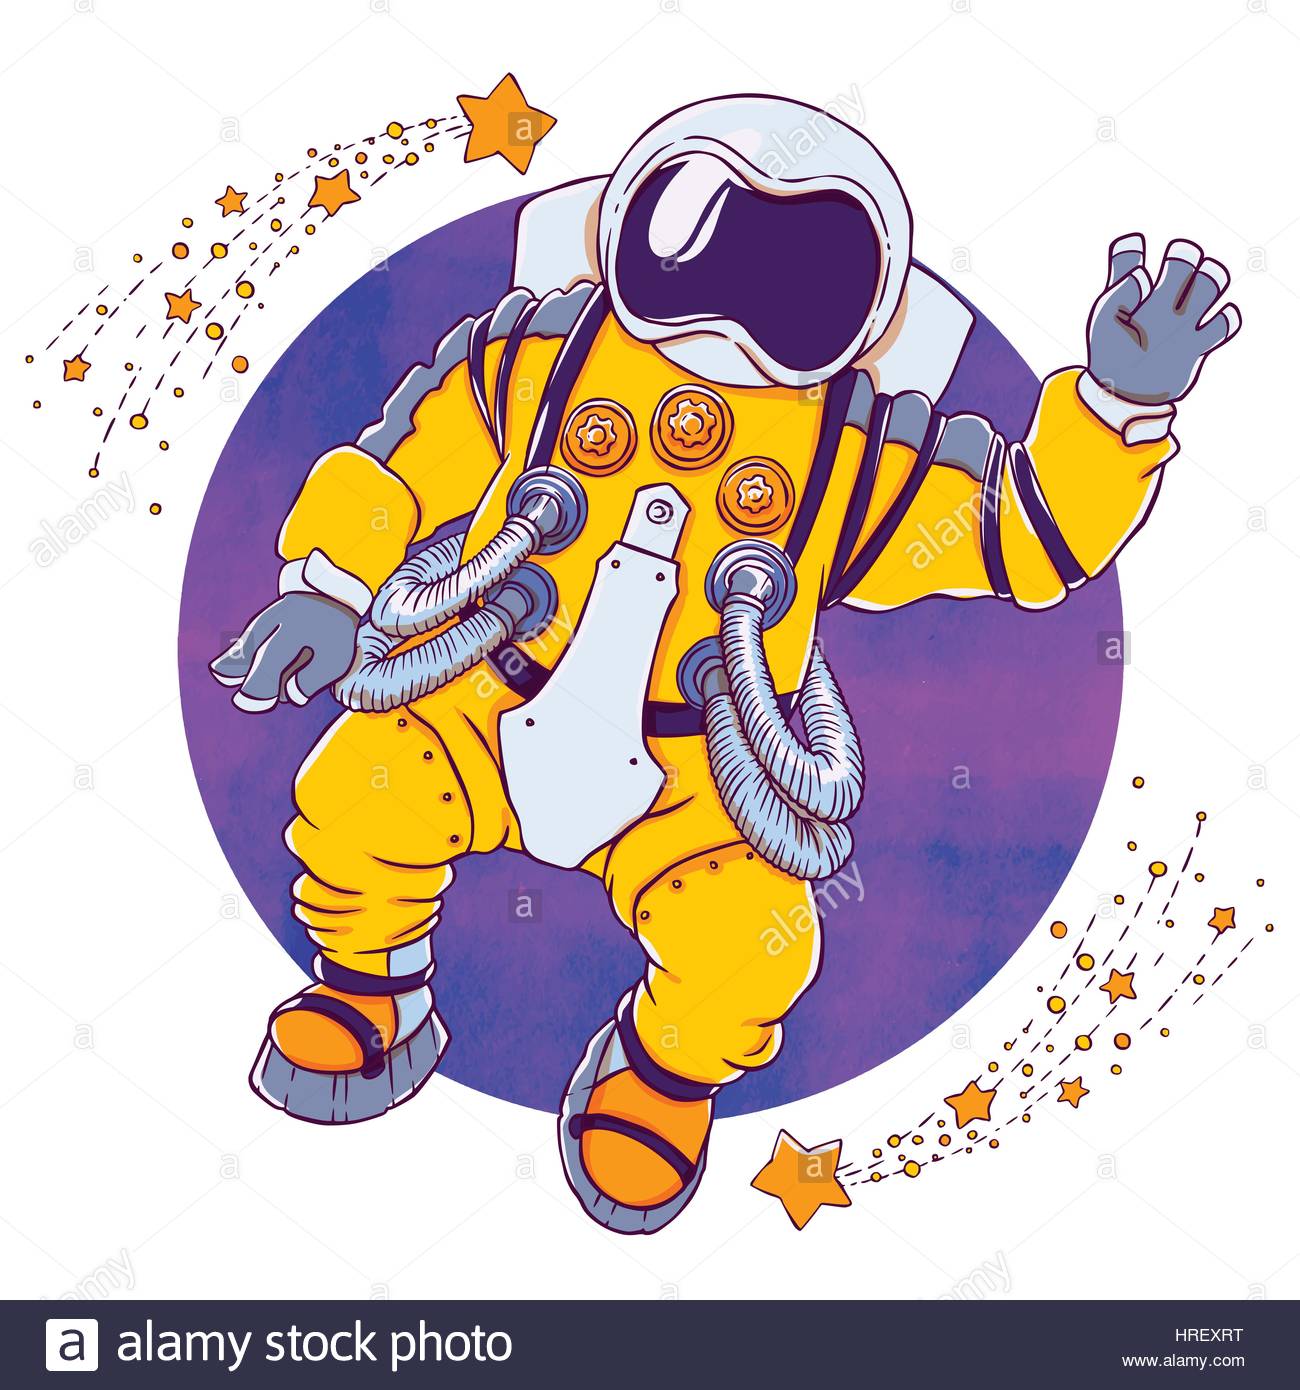 Cartoon Astronaut Face Stock Photos & Cartoon Astronaut Face Stock ...